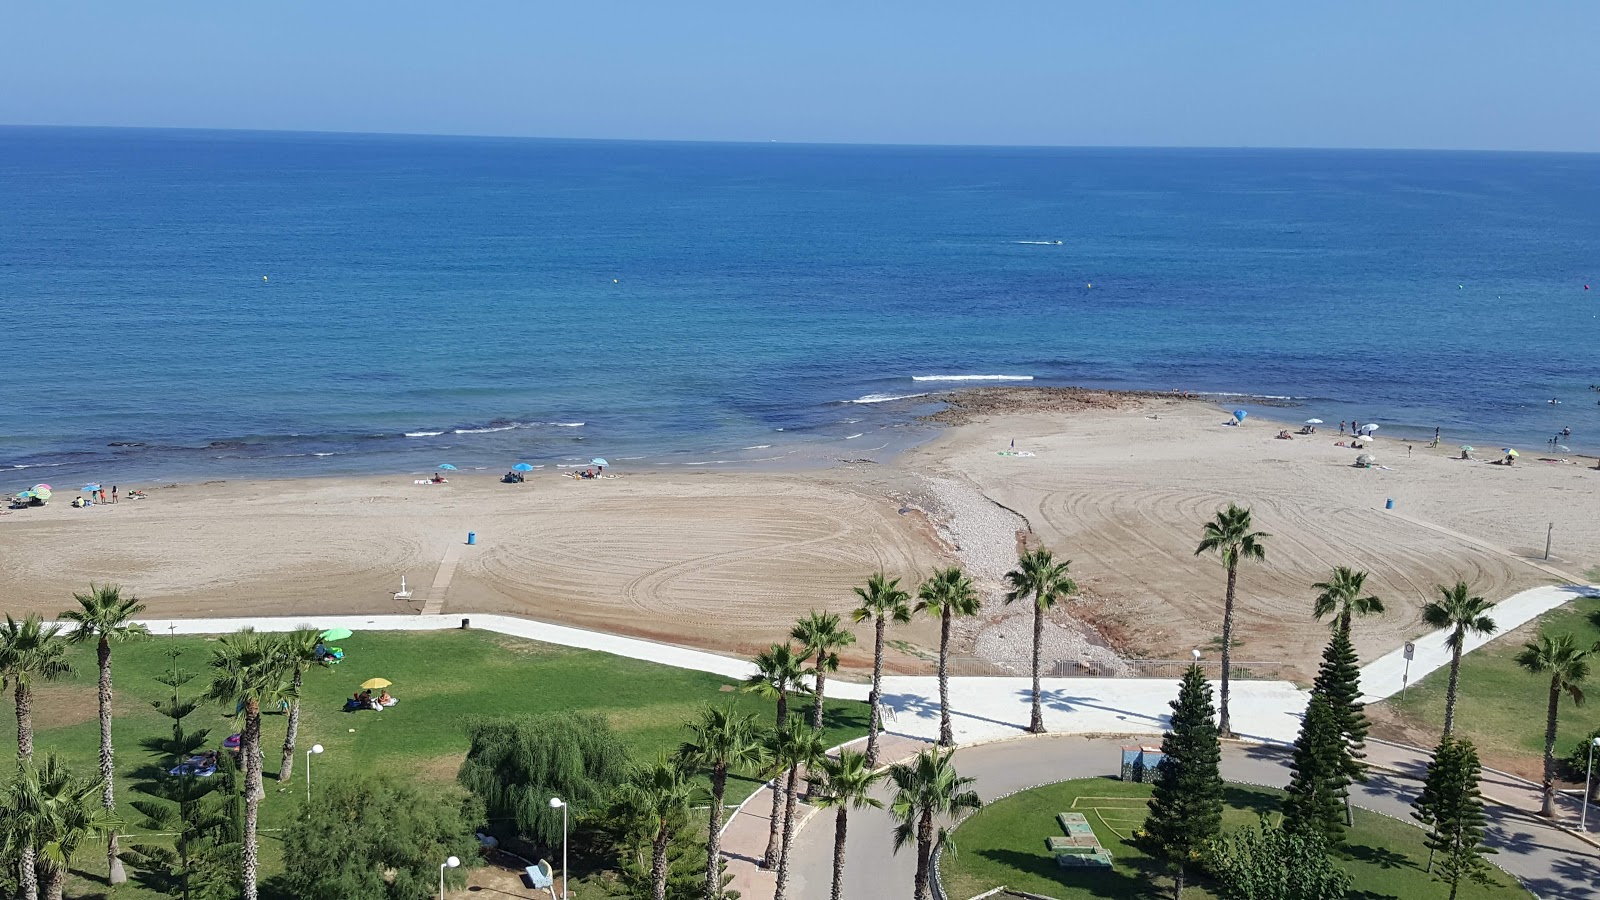 Playa de les Amplaries'in fotoğrafı çok temiz temizlik seviyesi ile